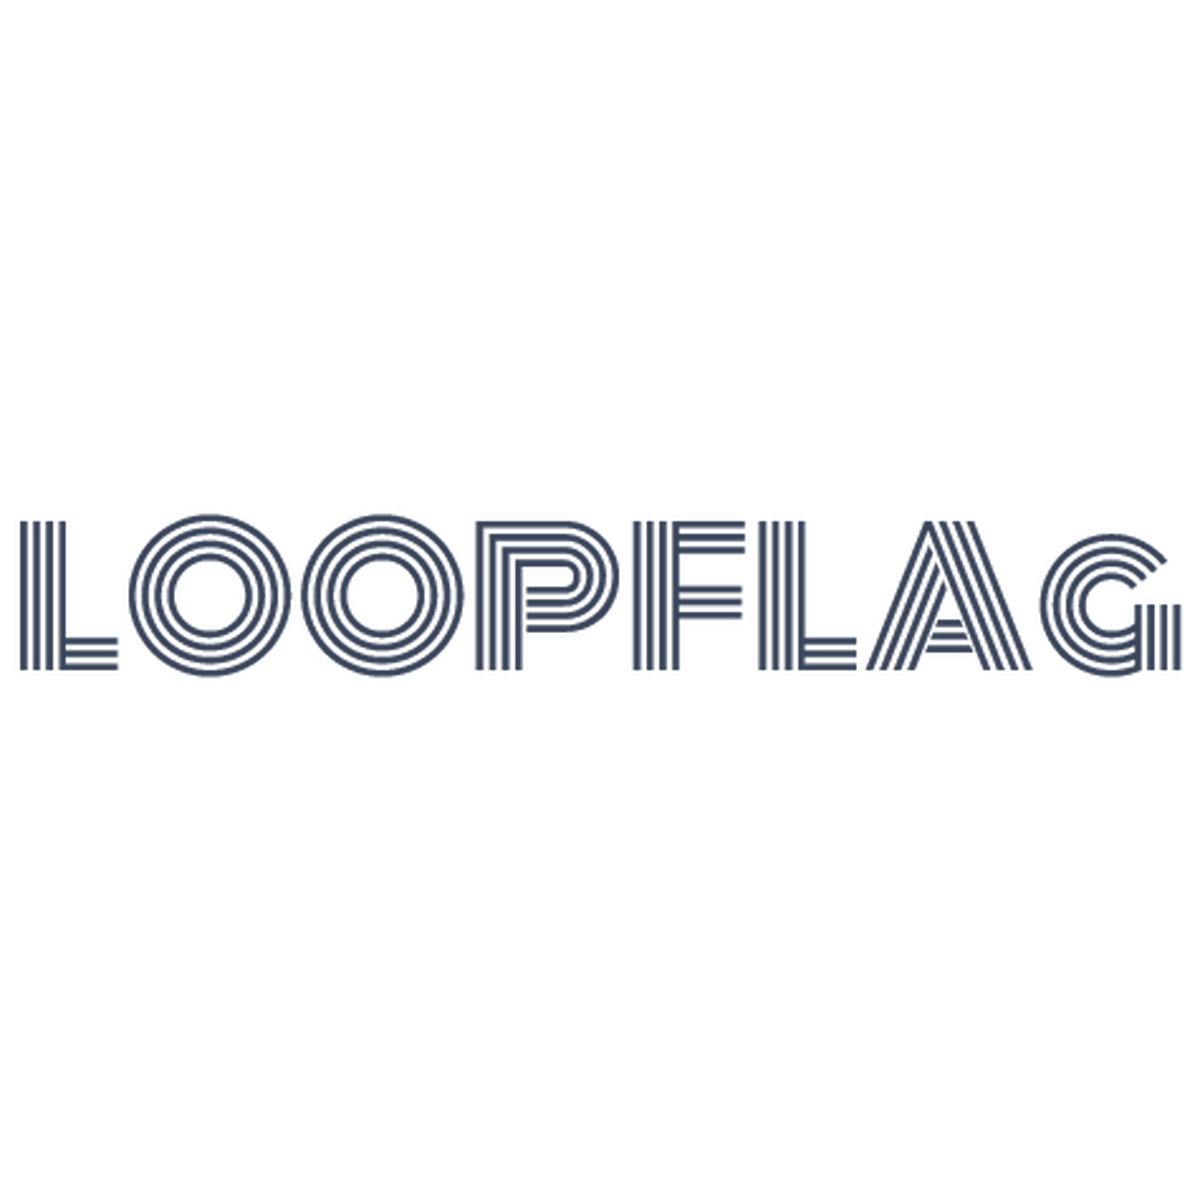 ウェルカムアイテム Loop Flag ループフラッグ ウェディング 両親贈呈品 ウェルカムボード プチギフト